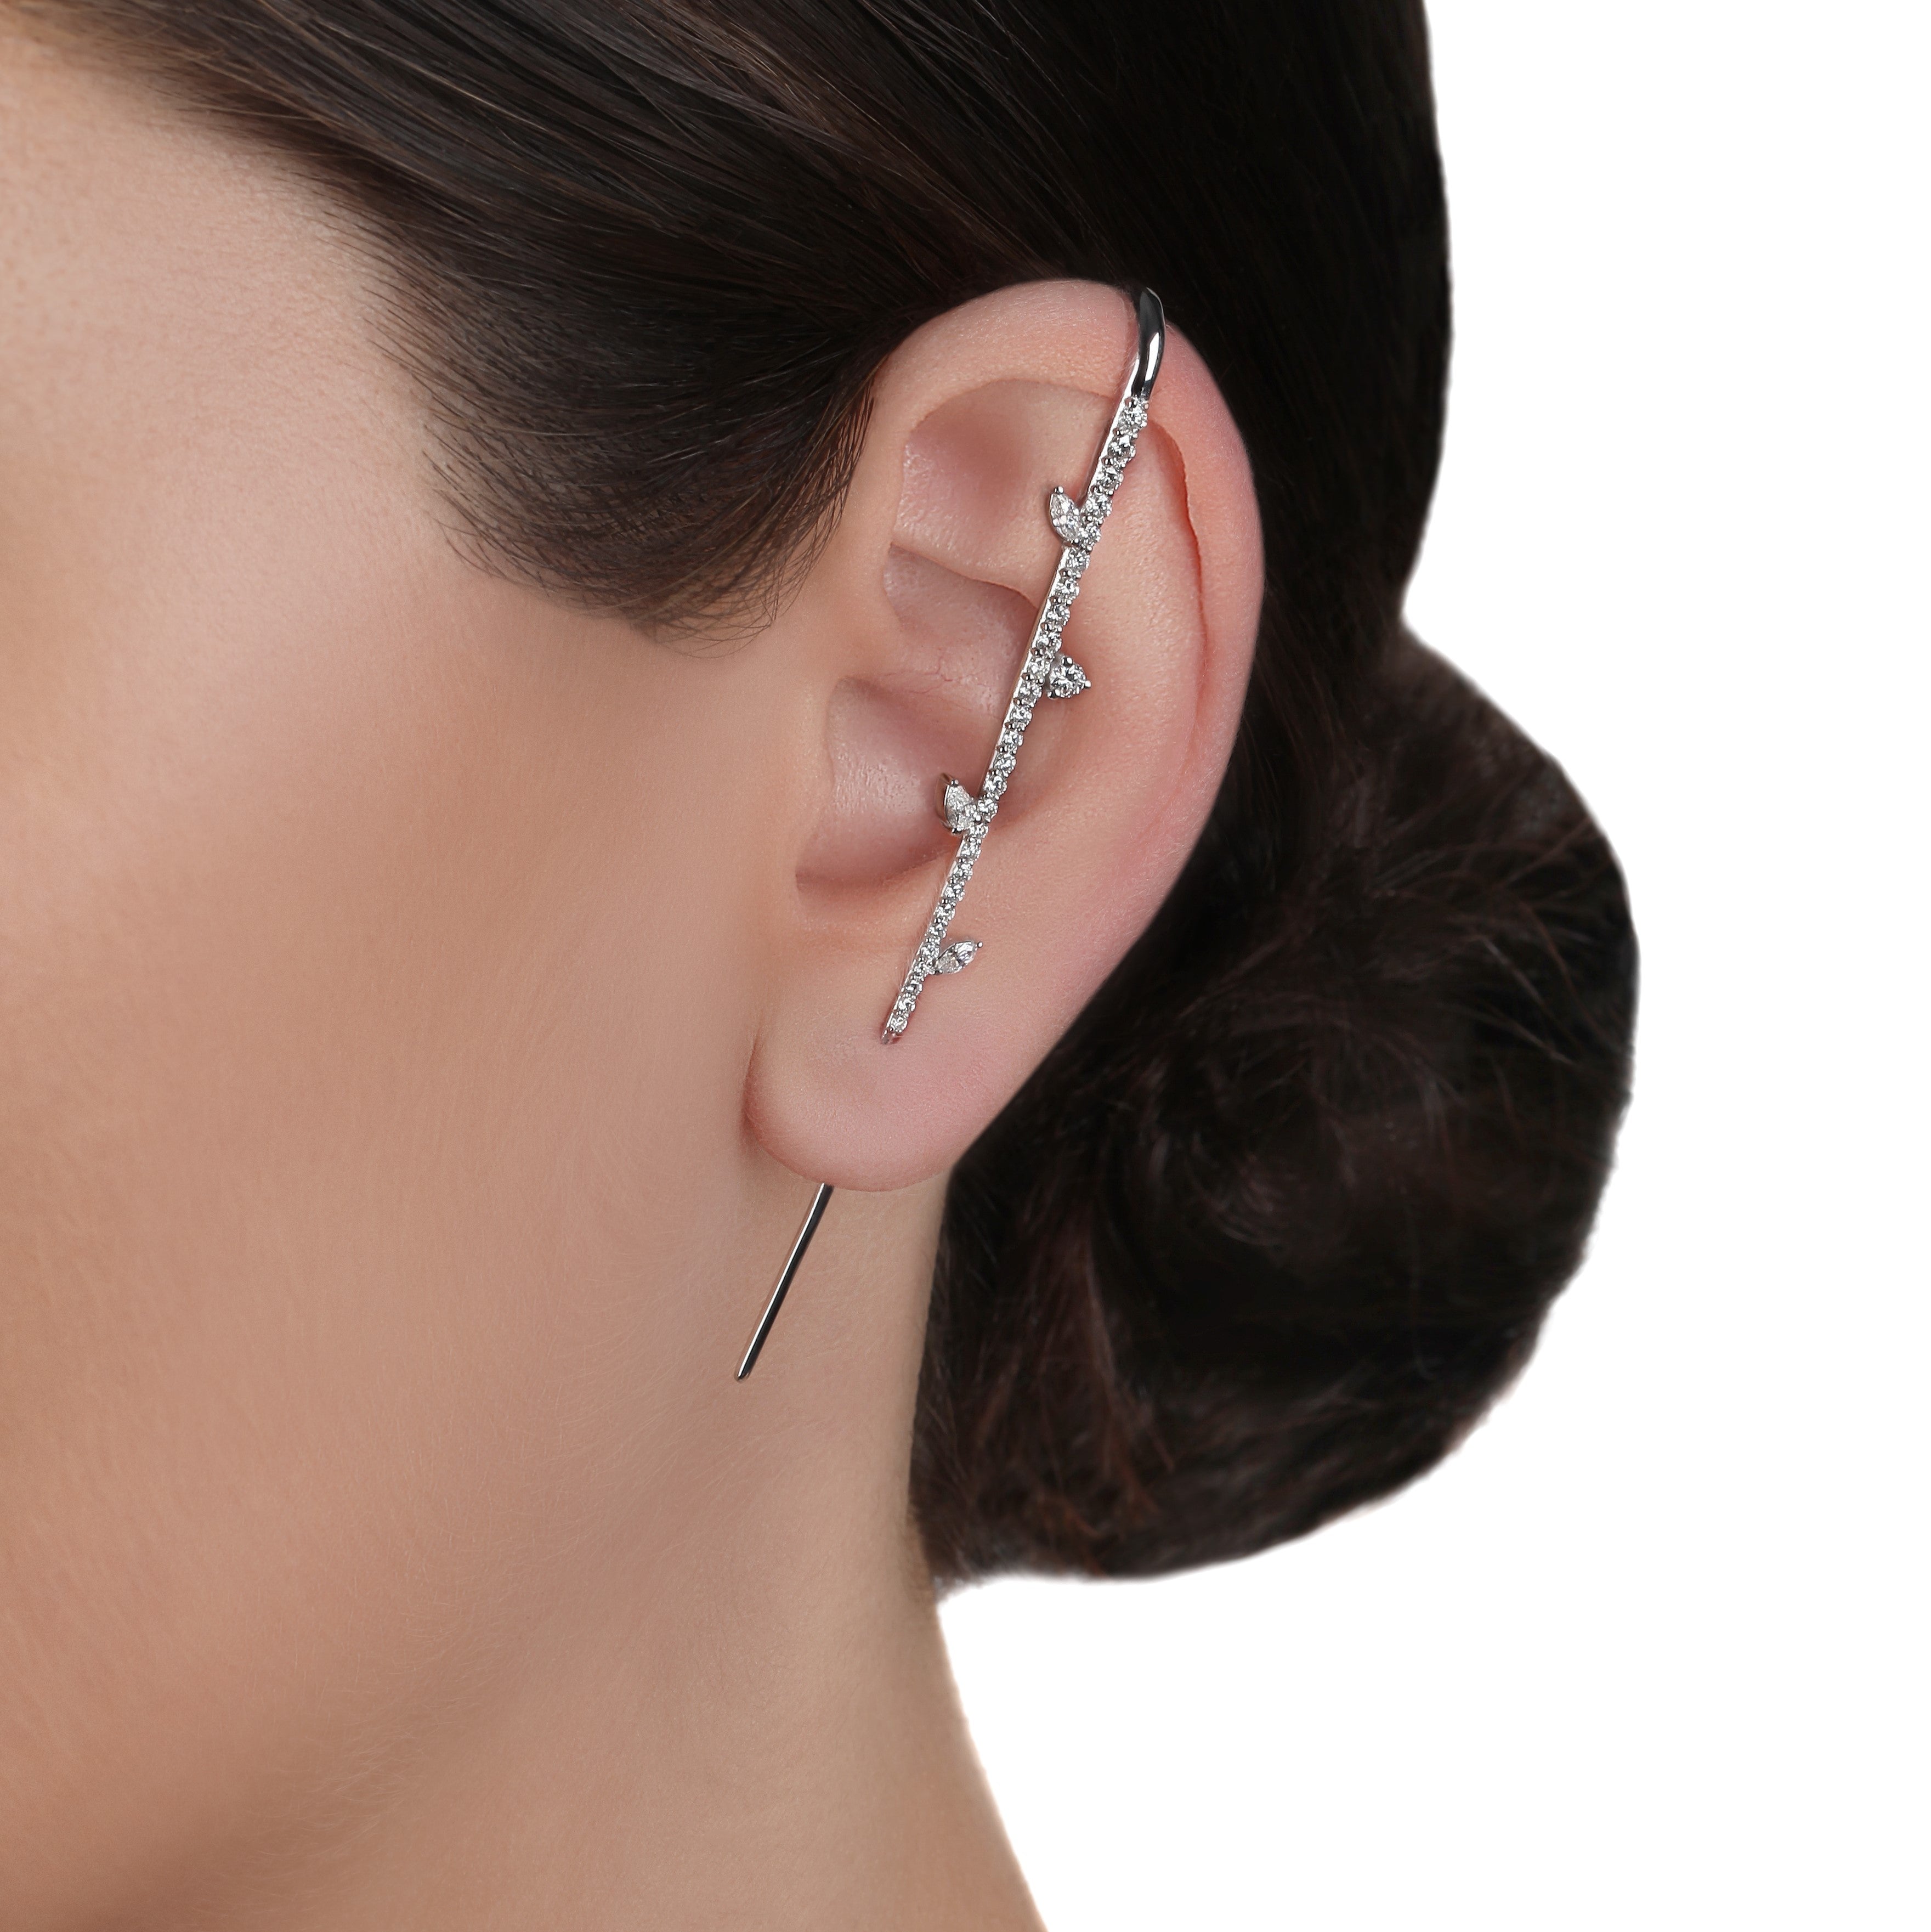 Single Side Long Thin Bar Ear Cuff Diamond Earring | Shop online